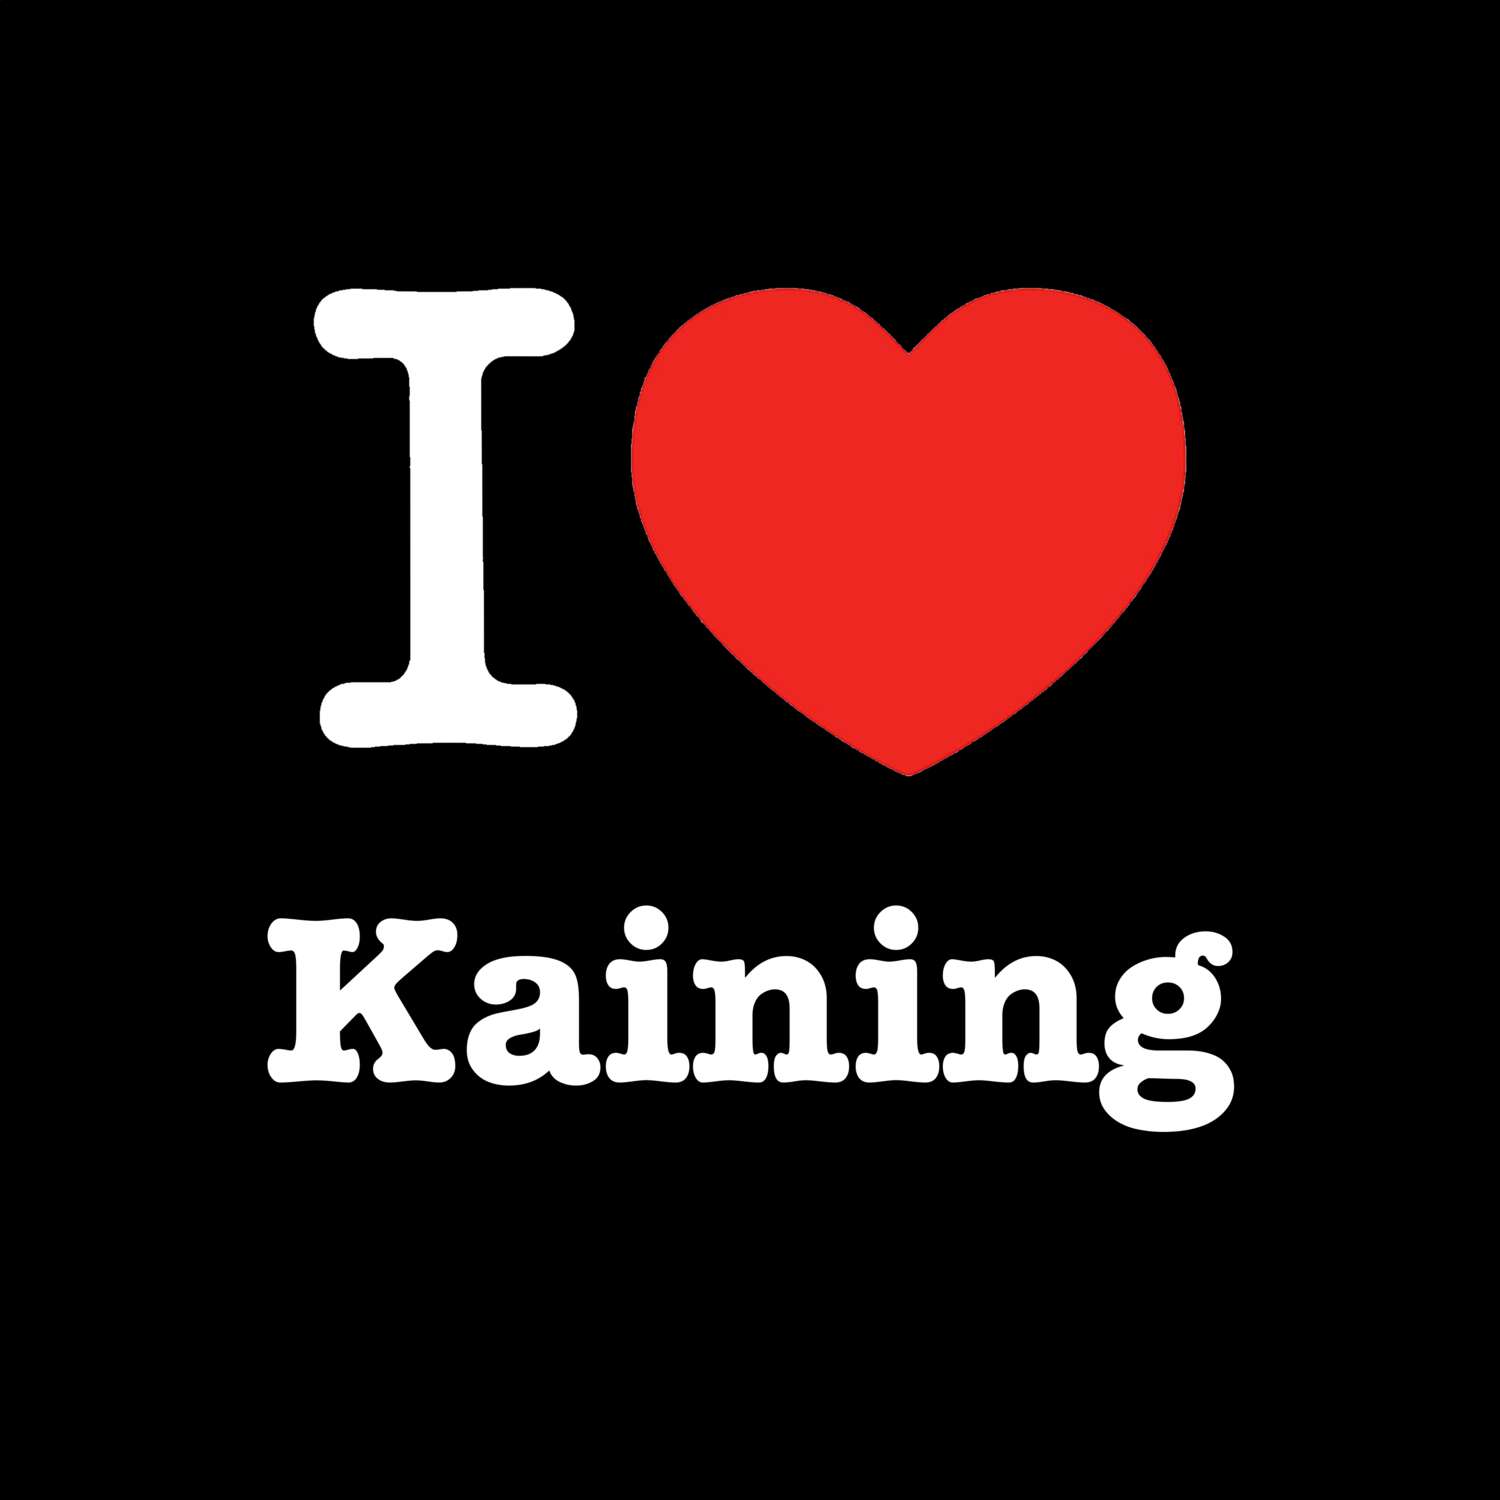 Kaining T-Shirt »I love«